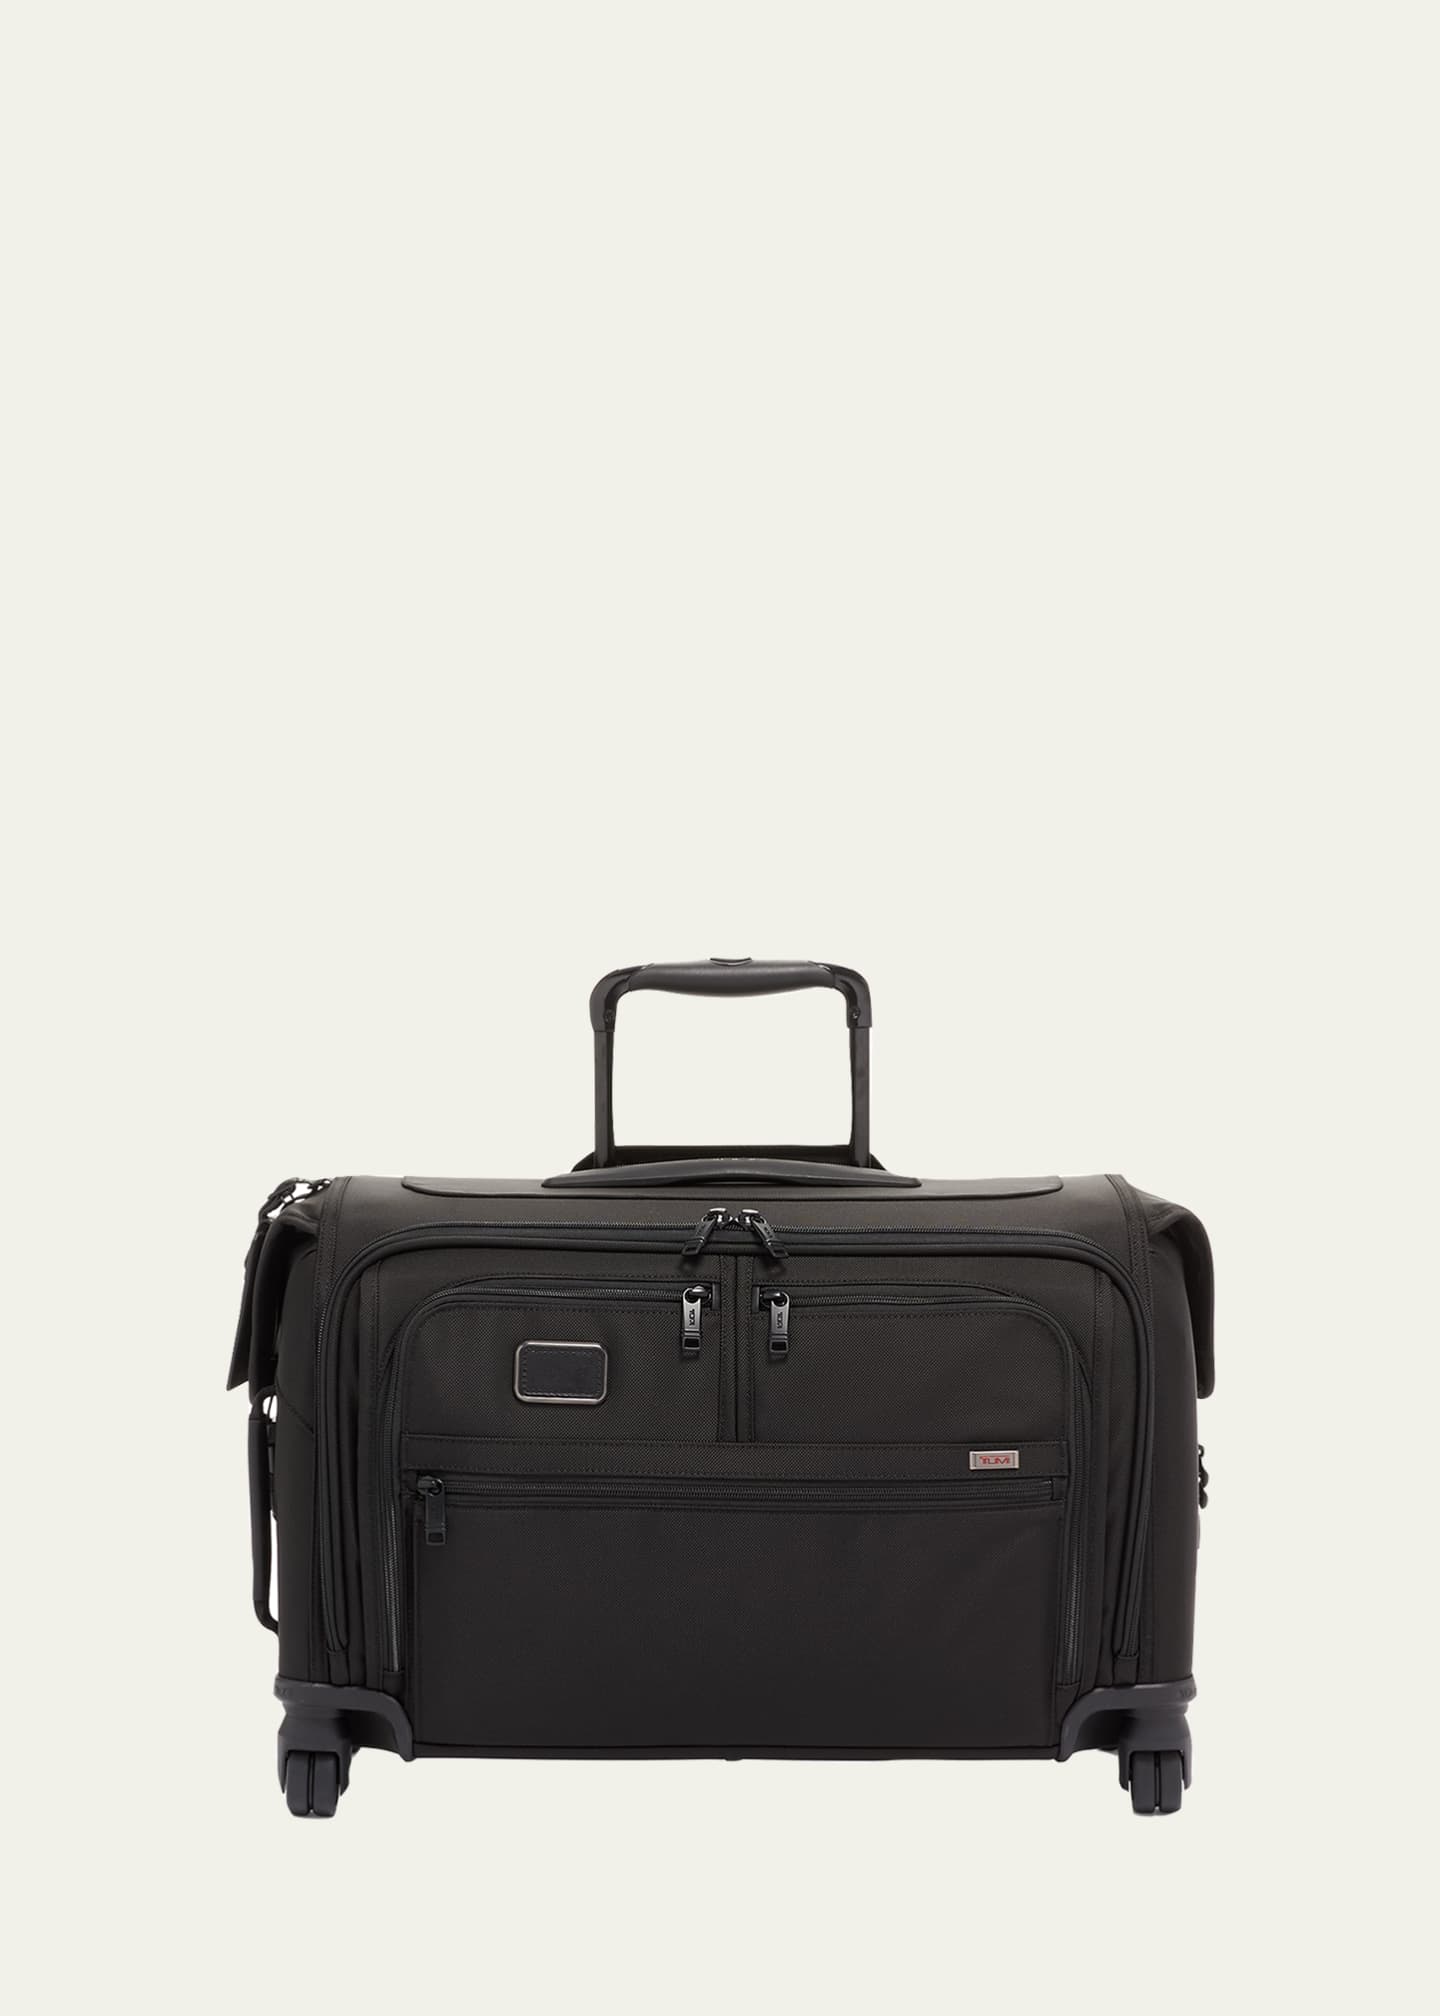 TUMI Alpha 3 Carry-On 4-Wheel Garment Bag